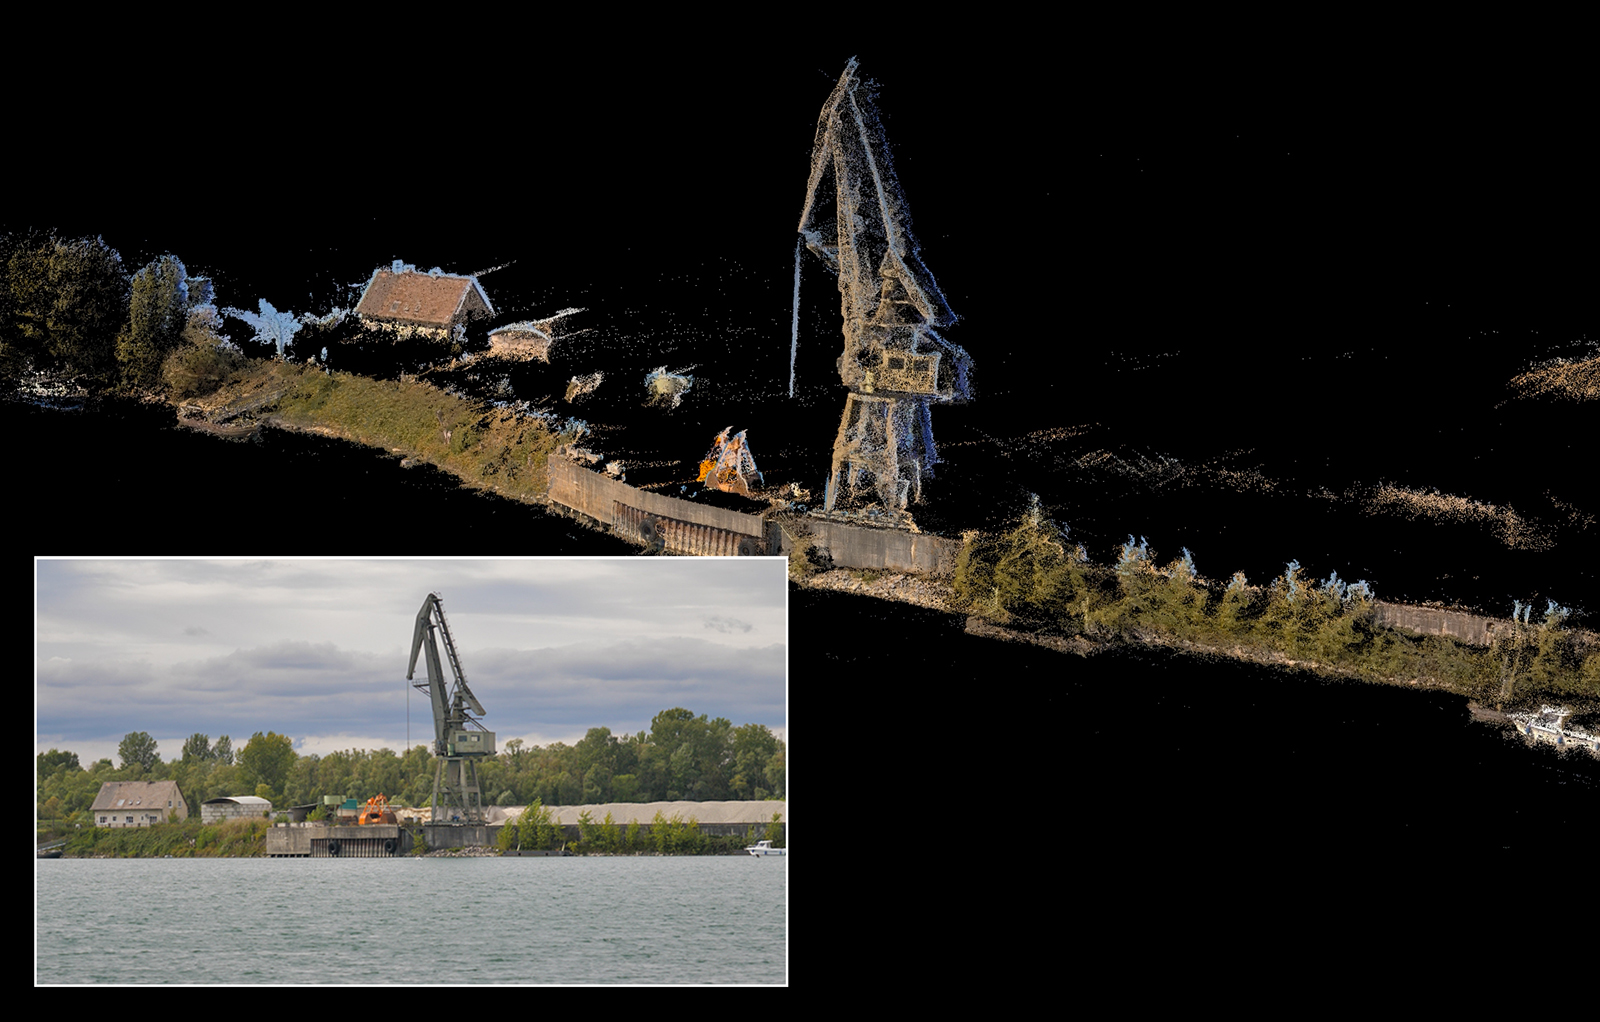 Dreidimensionale Rekonstruktion der Uferbebauung durch die Fusion von Kameras und Laserscanner – sowie zum Vergleich ein Foto desselben Uferabschnitts aus Perspektive des Wasserfahrzeugs